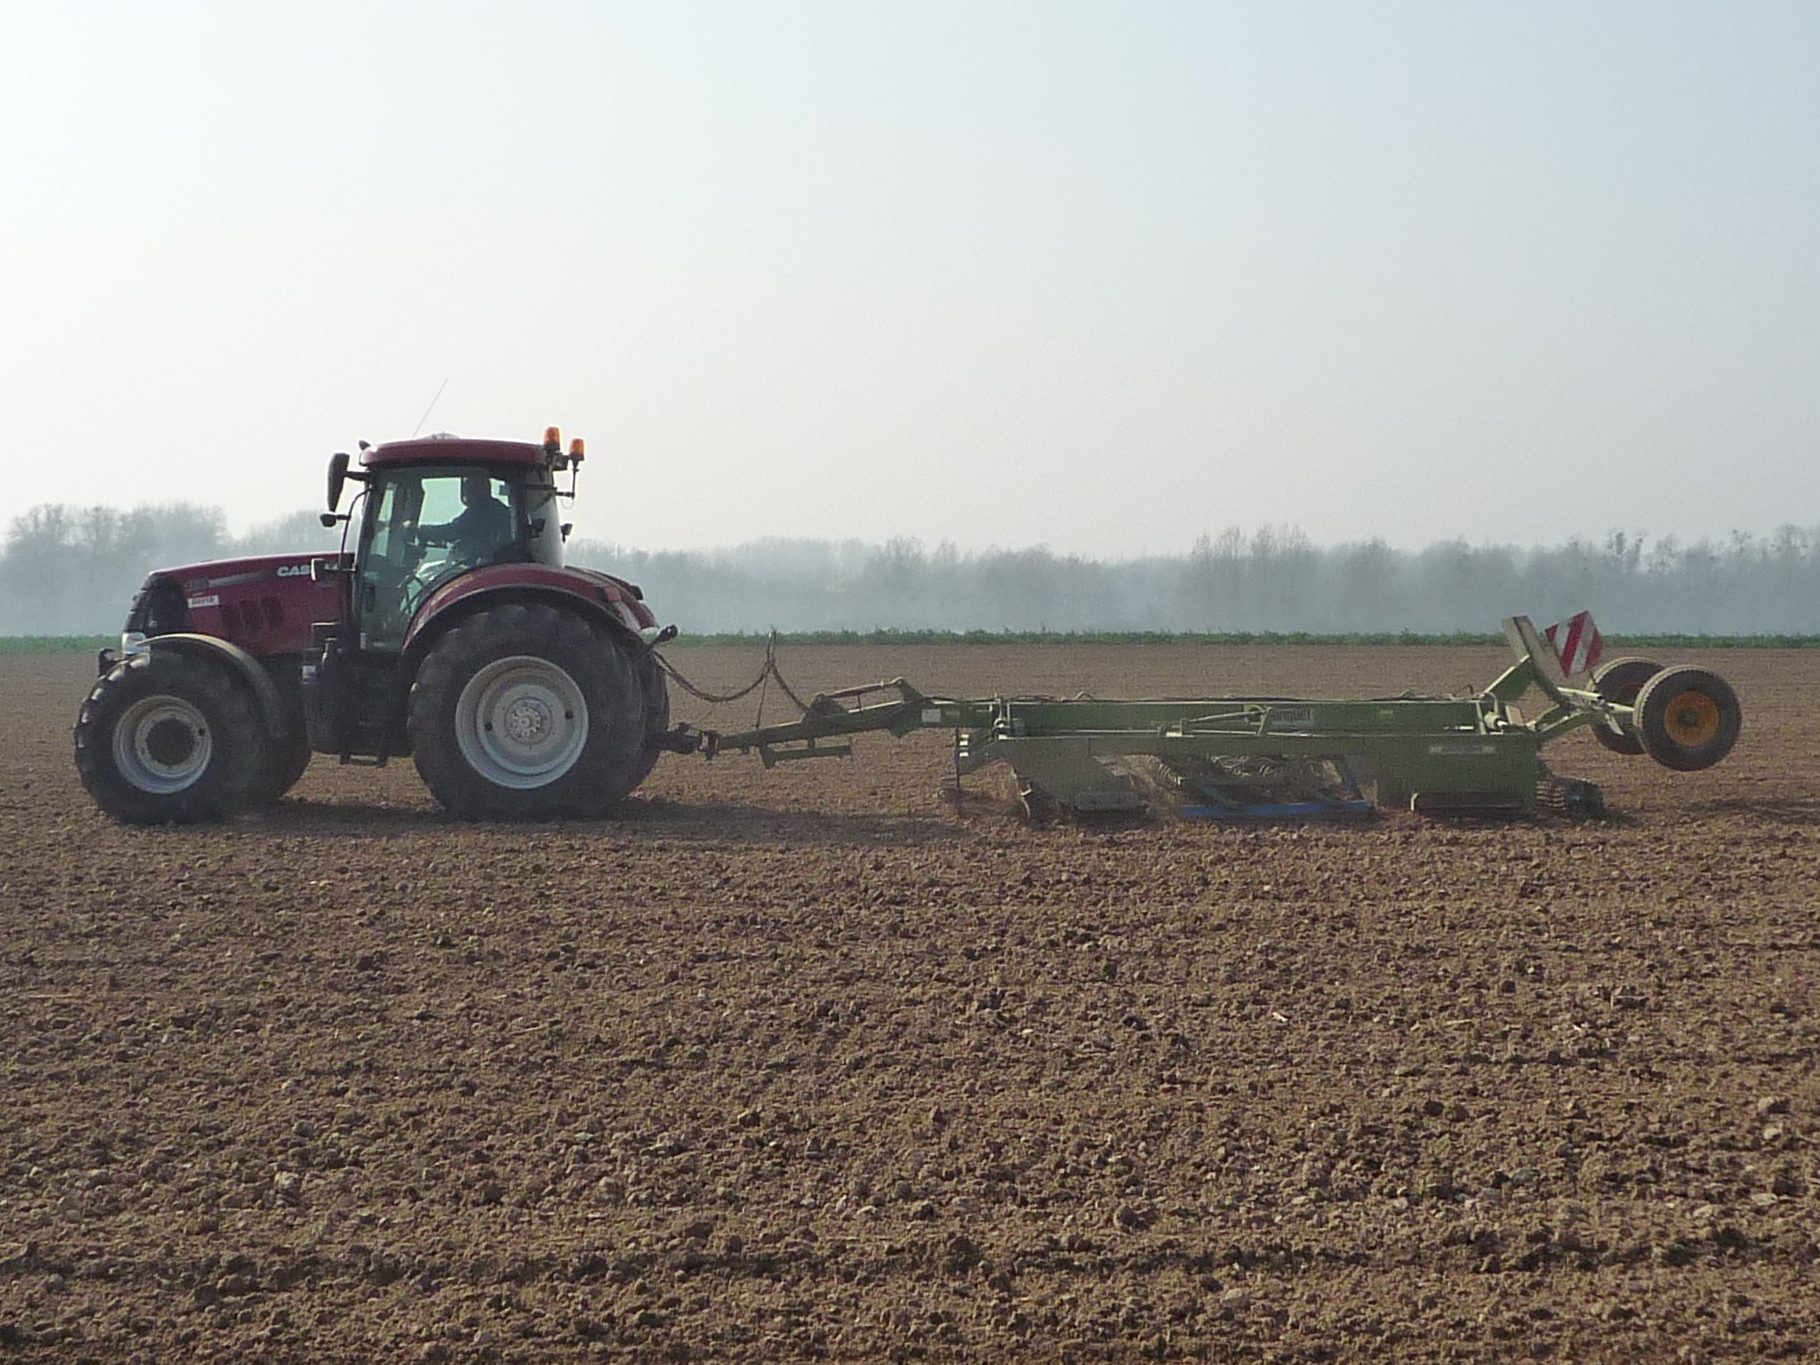 Tracteur équipé pour les préparation du sol avant les semis. Il homogénéise le niveau.